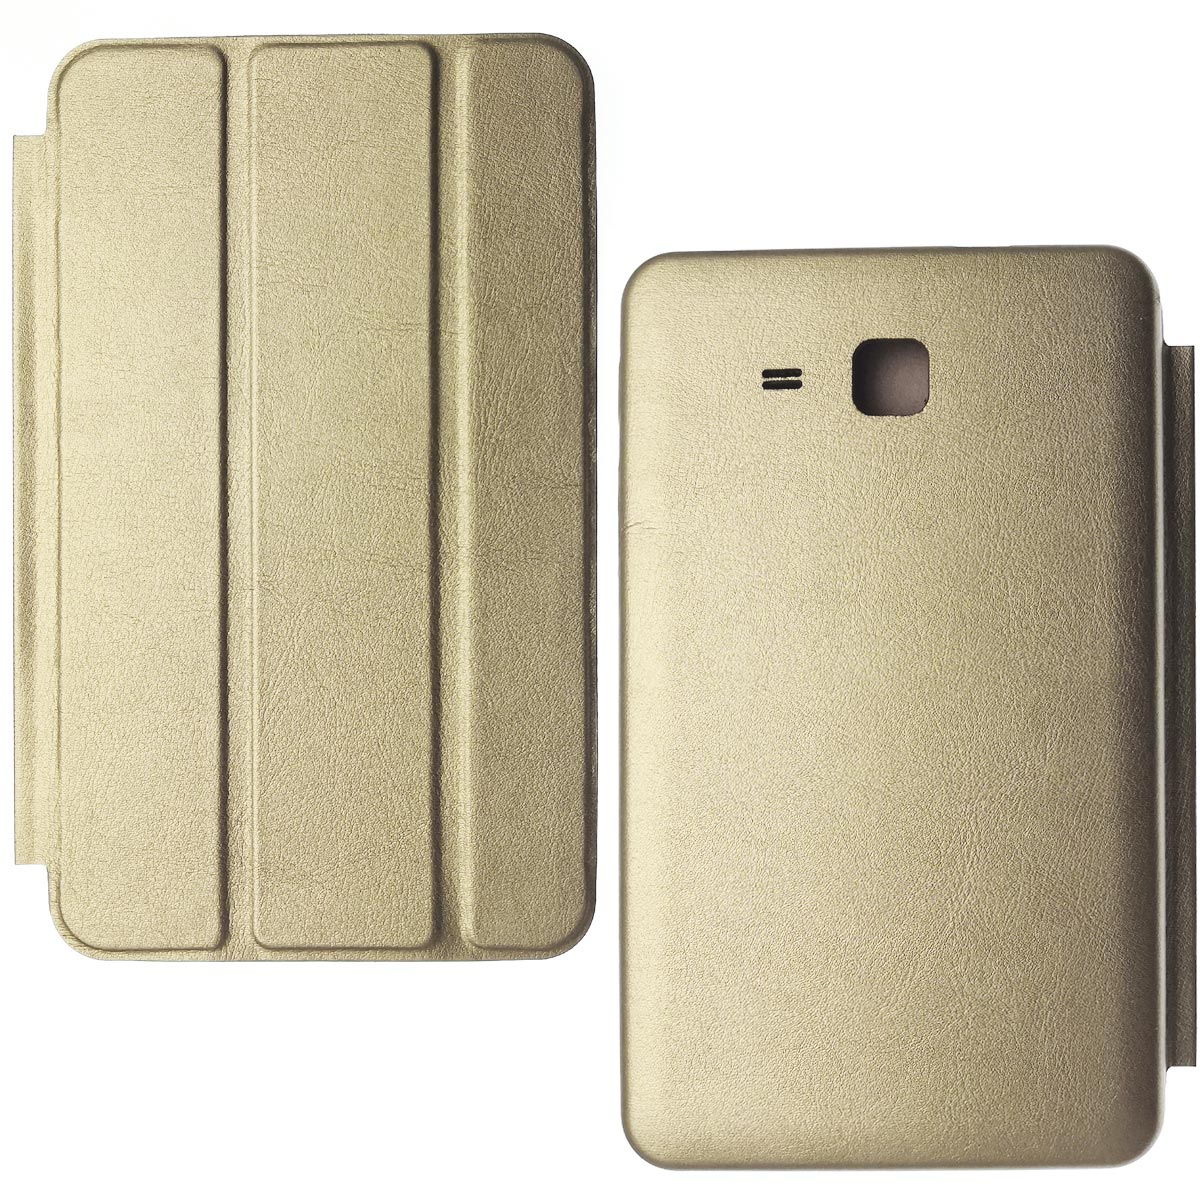 Чехол книжка Smart Case для планшета SAMSUNG Galaxy Tab A 7.0 (SM-T280, SM-T285), экокожа, цвет золотистый